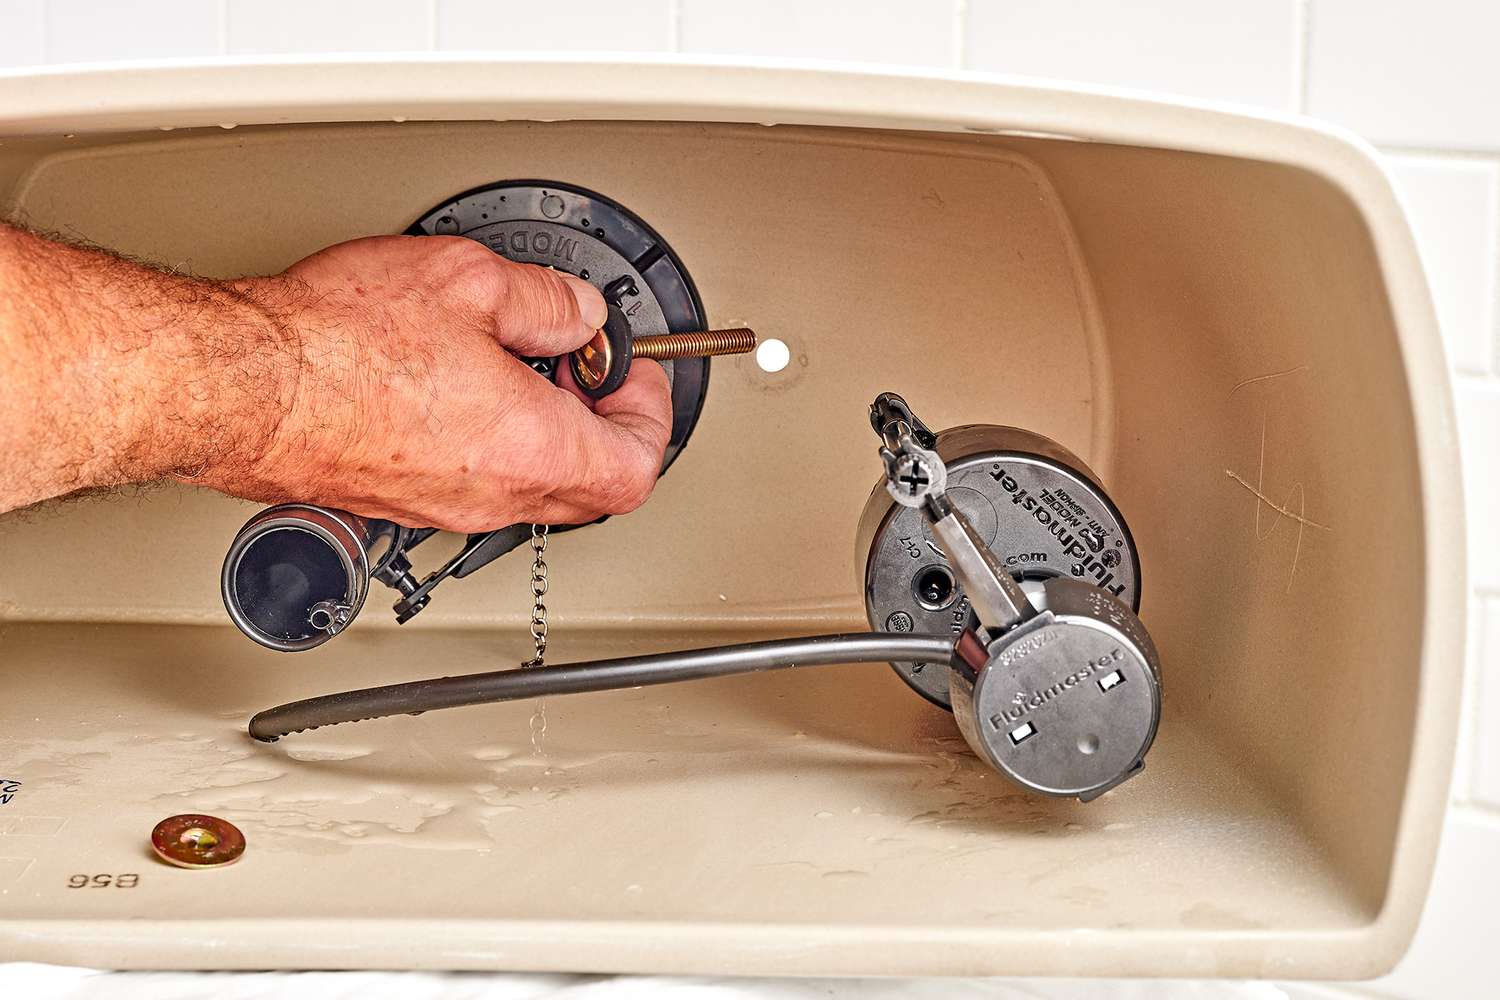 Pernos nuevos de la cisterna insertados en el orificio de la parte inferior de la cisterna del inodoro